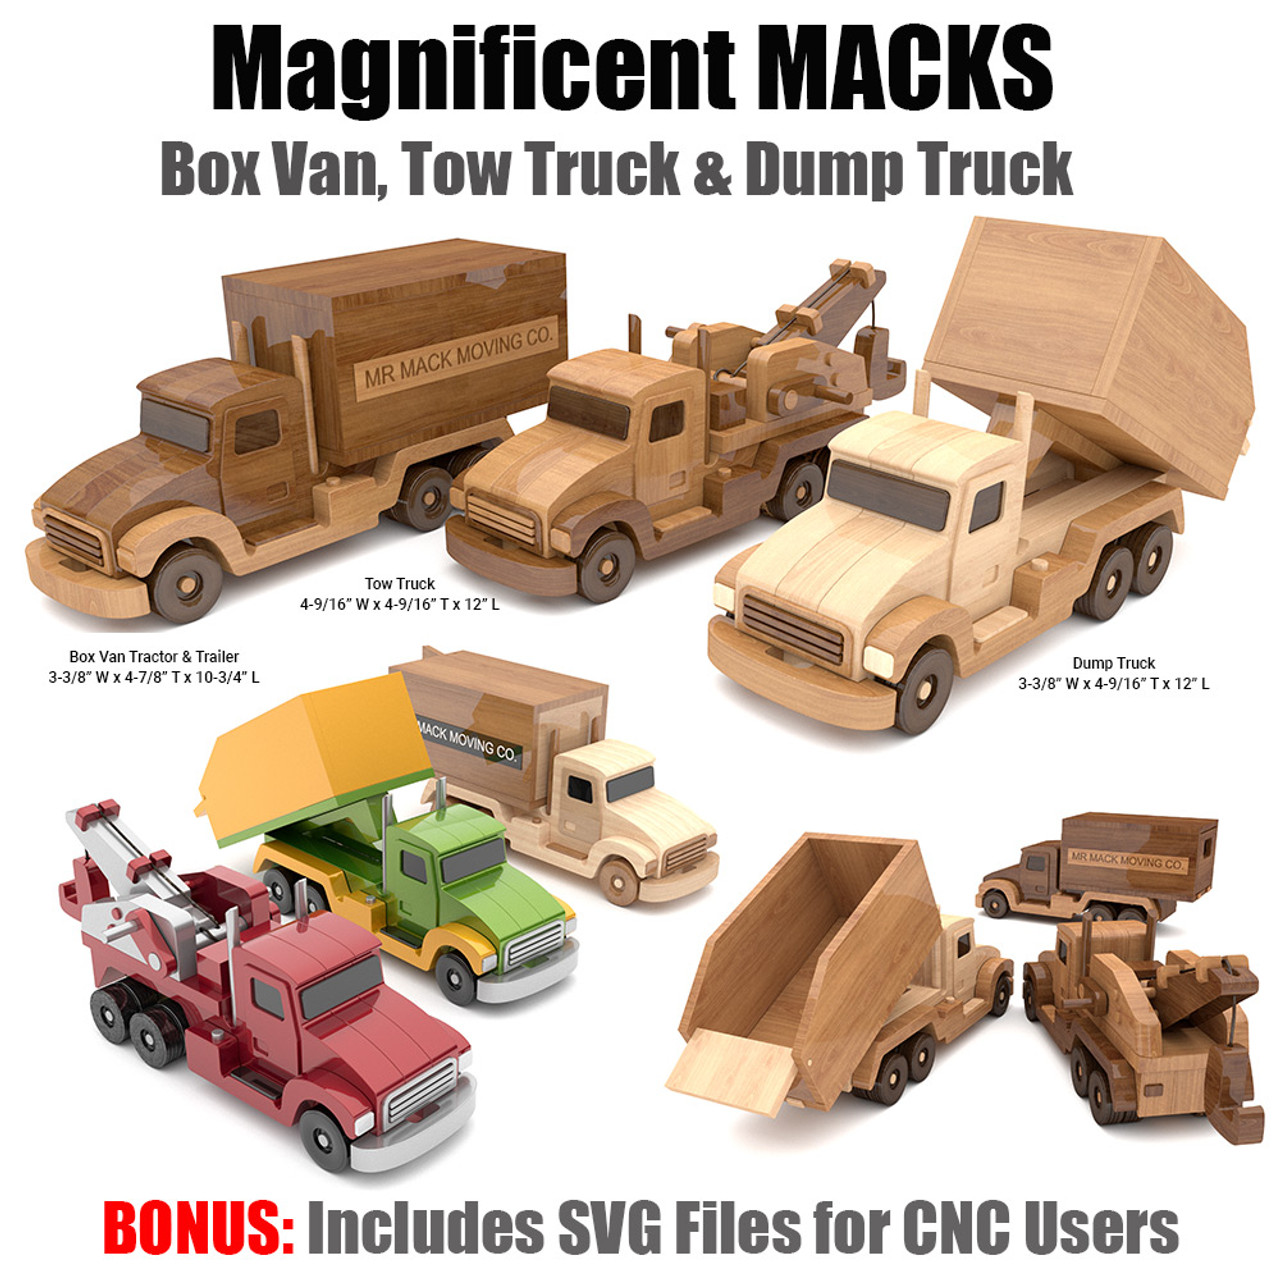 Magnificent MACKS Box Van, Tow & Dump Trucks